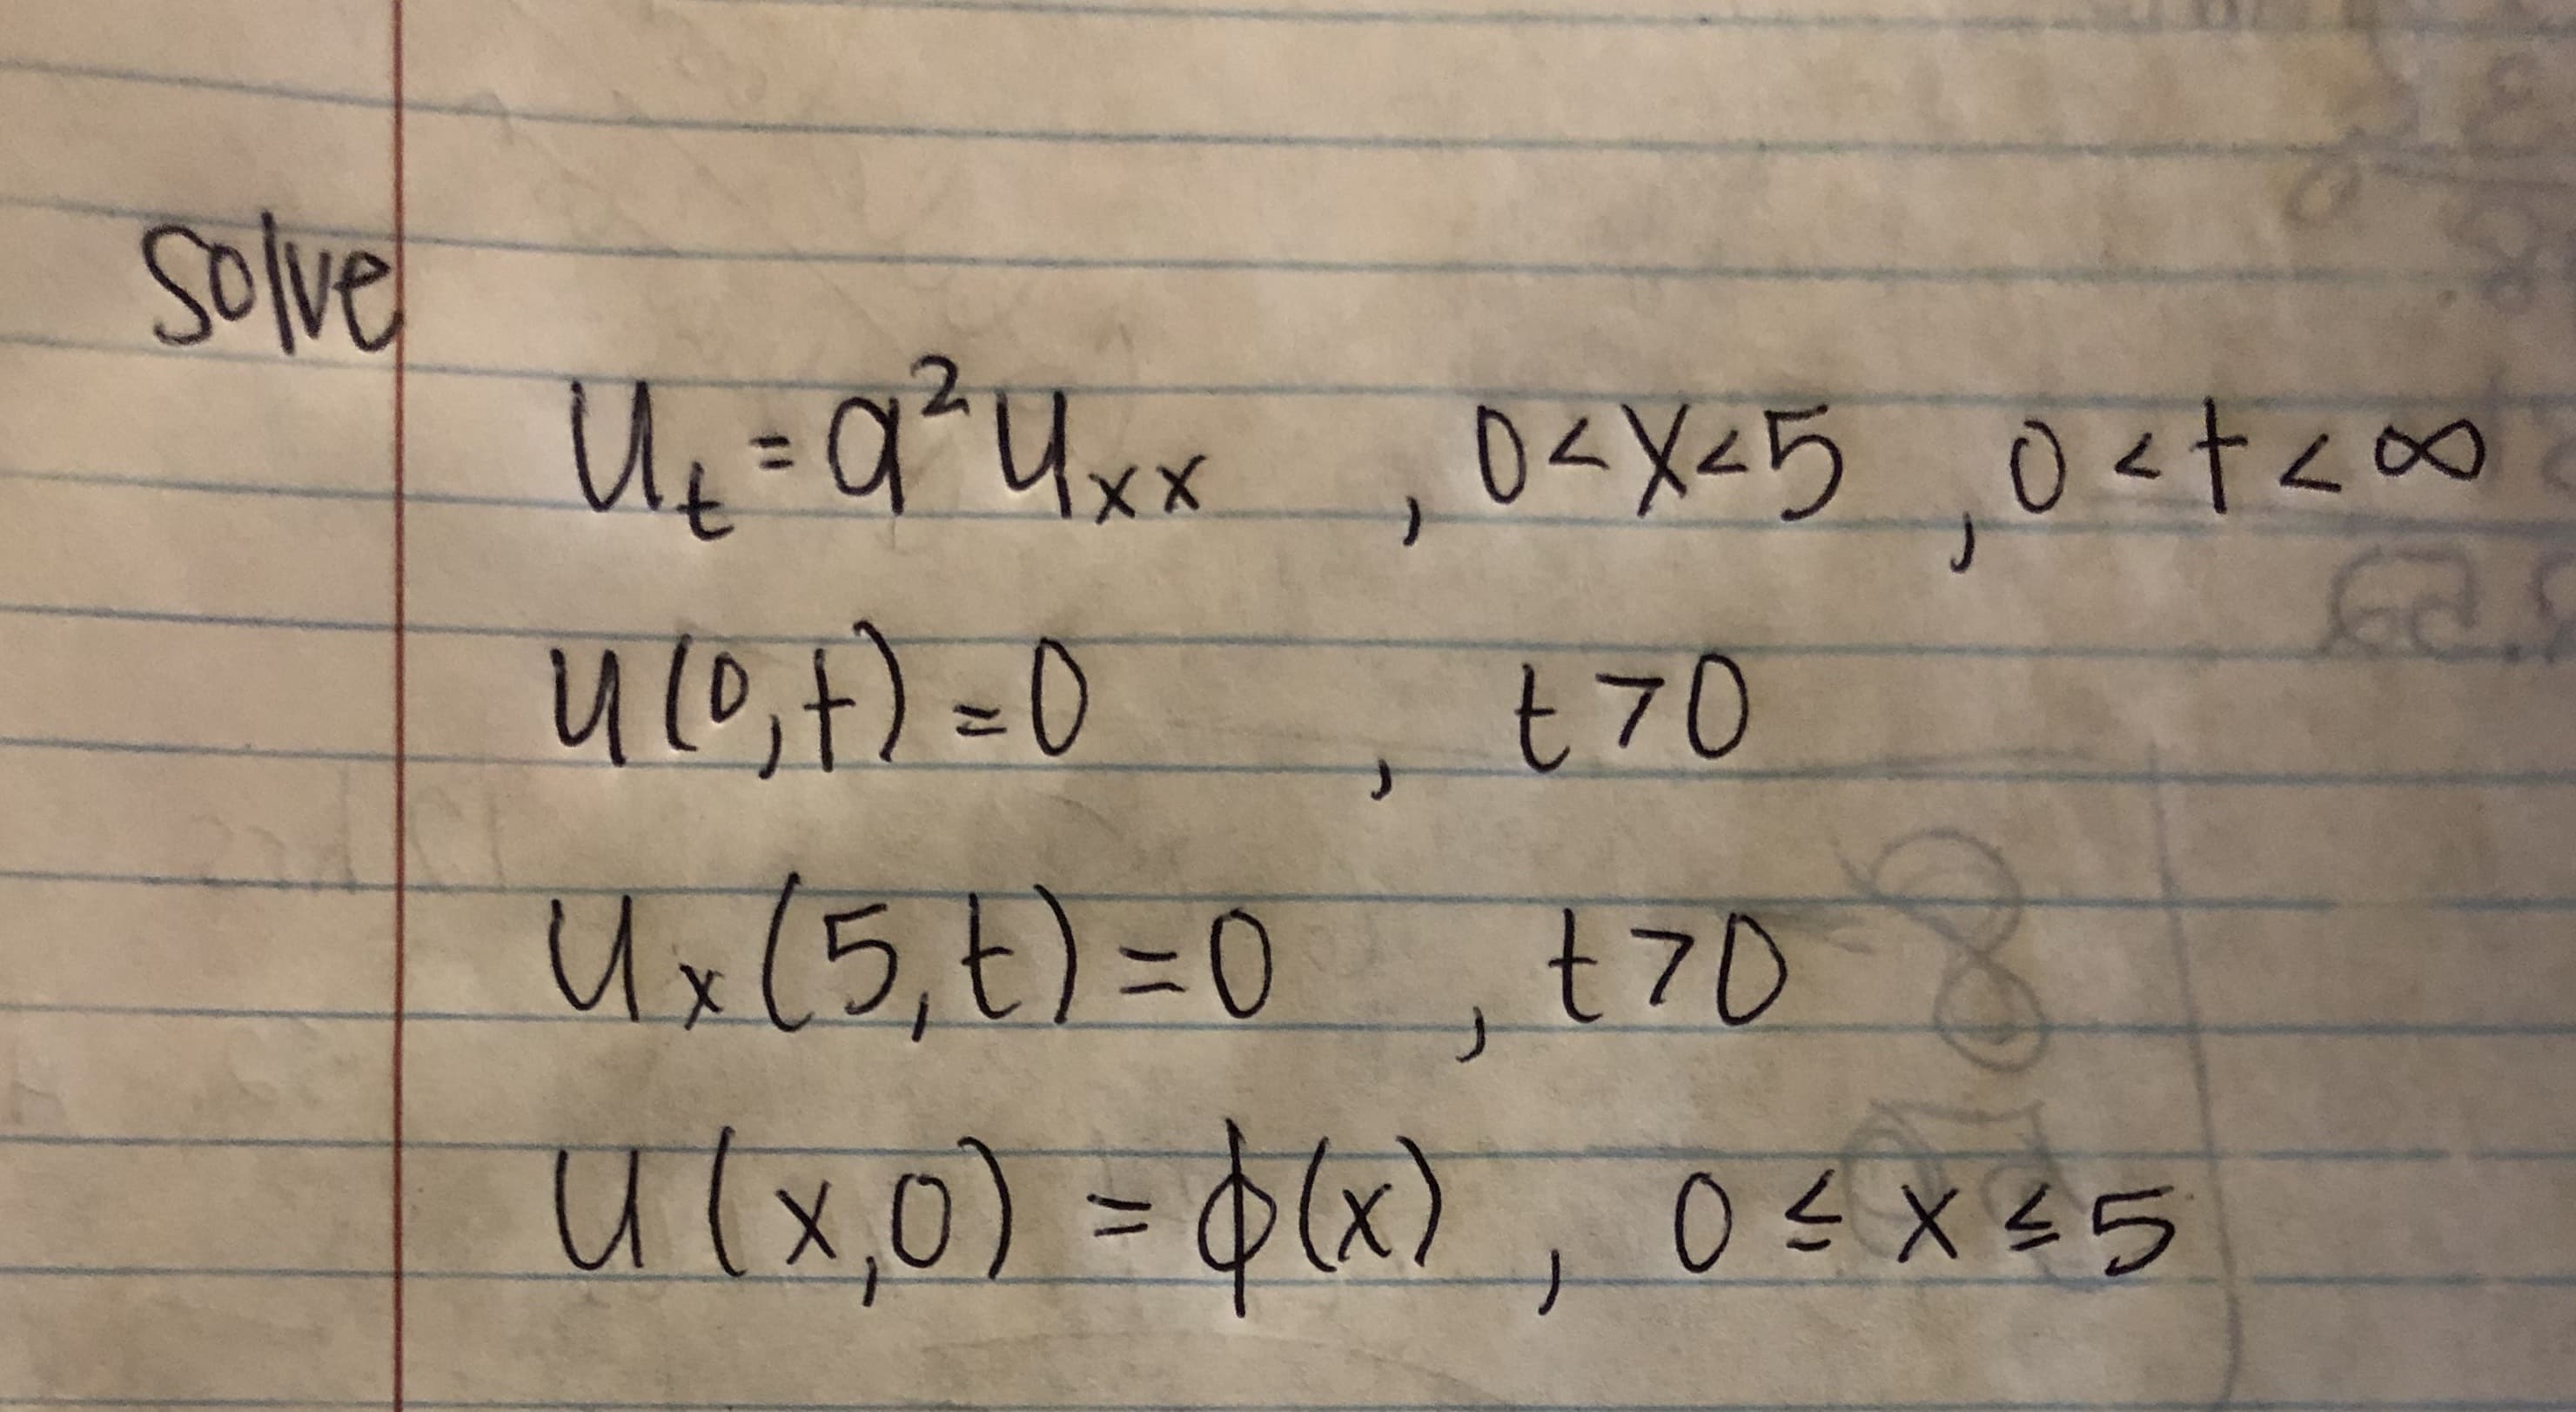 Solve
Uq =q?Ux«
U10,7) =0
=q²Uxx
0<X<5 0<t<∞
O<t<o
%3D
t70
0,t70
Ux(5,t)%3D0
(x)
